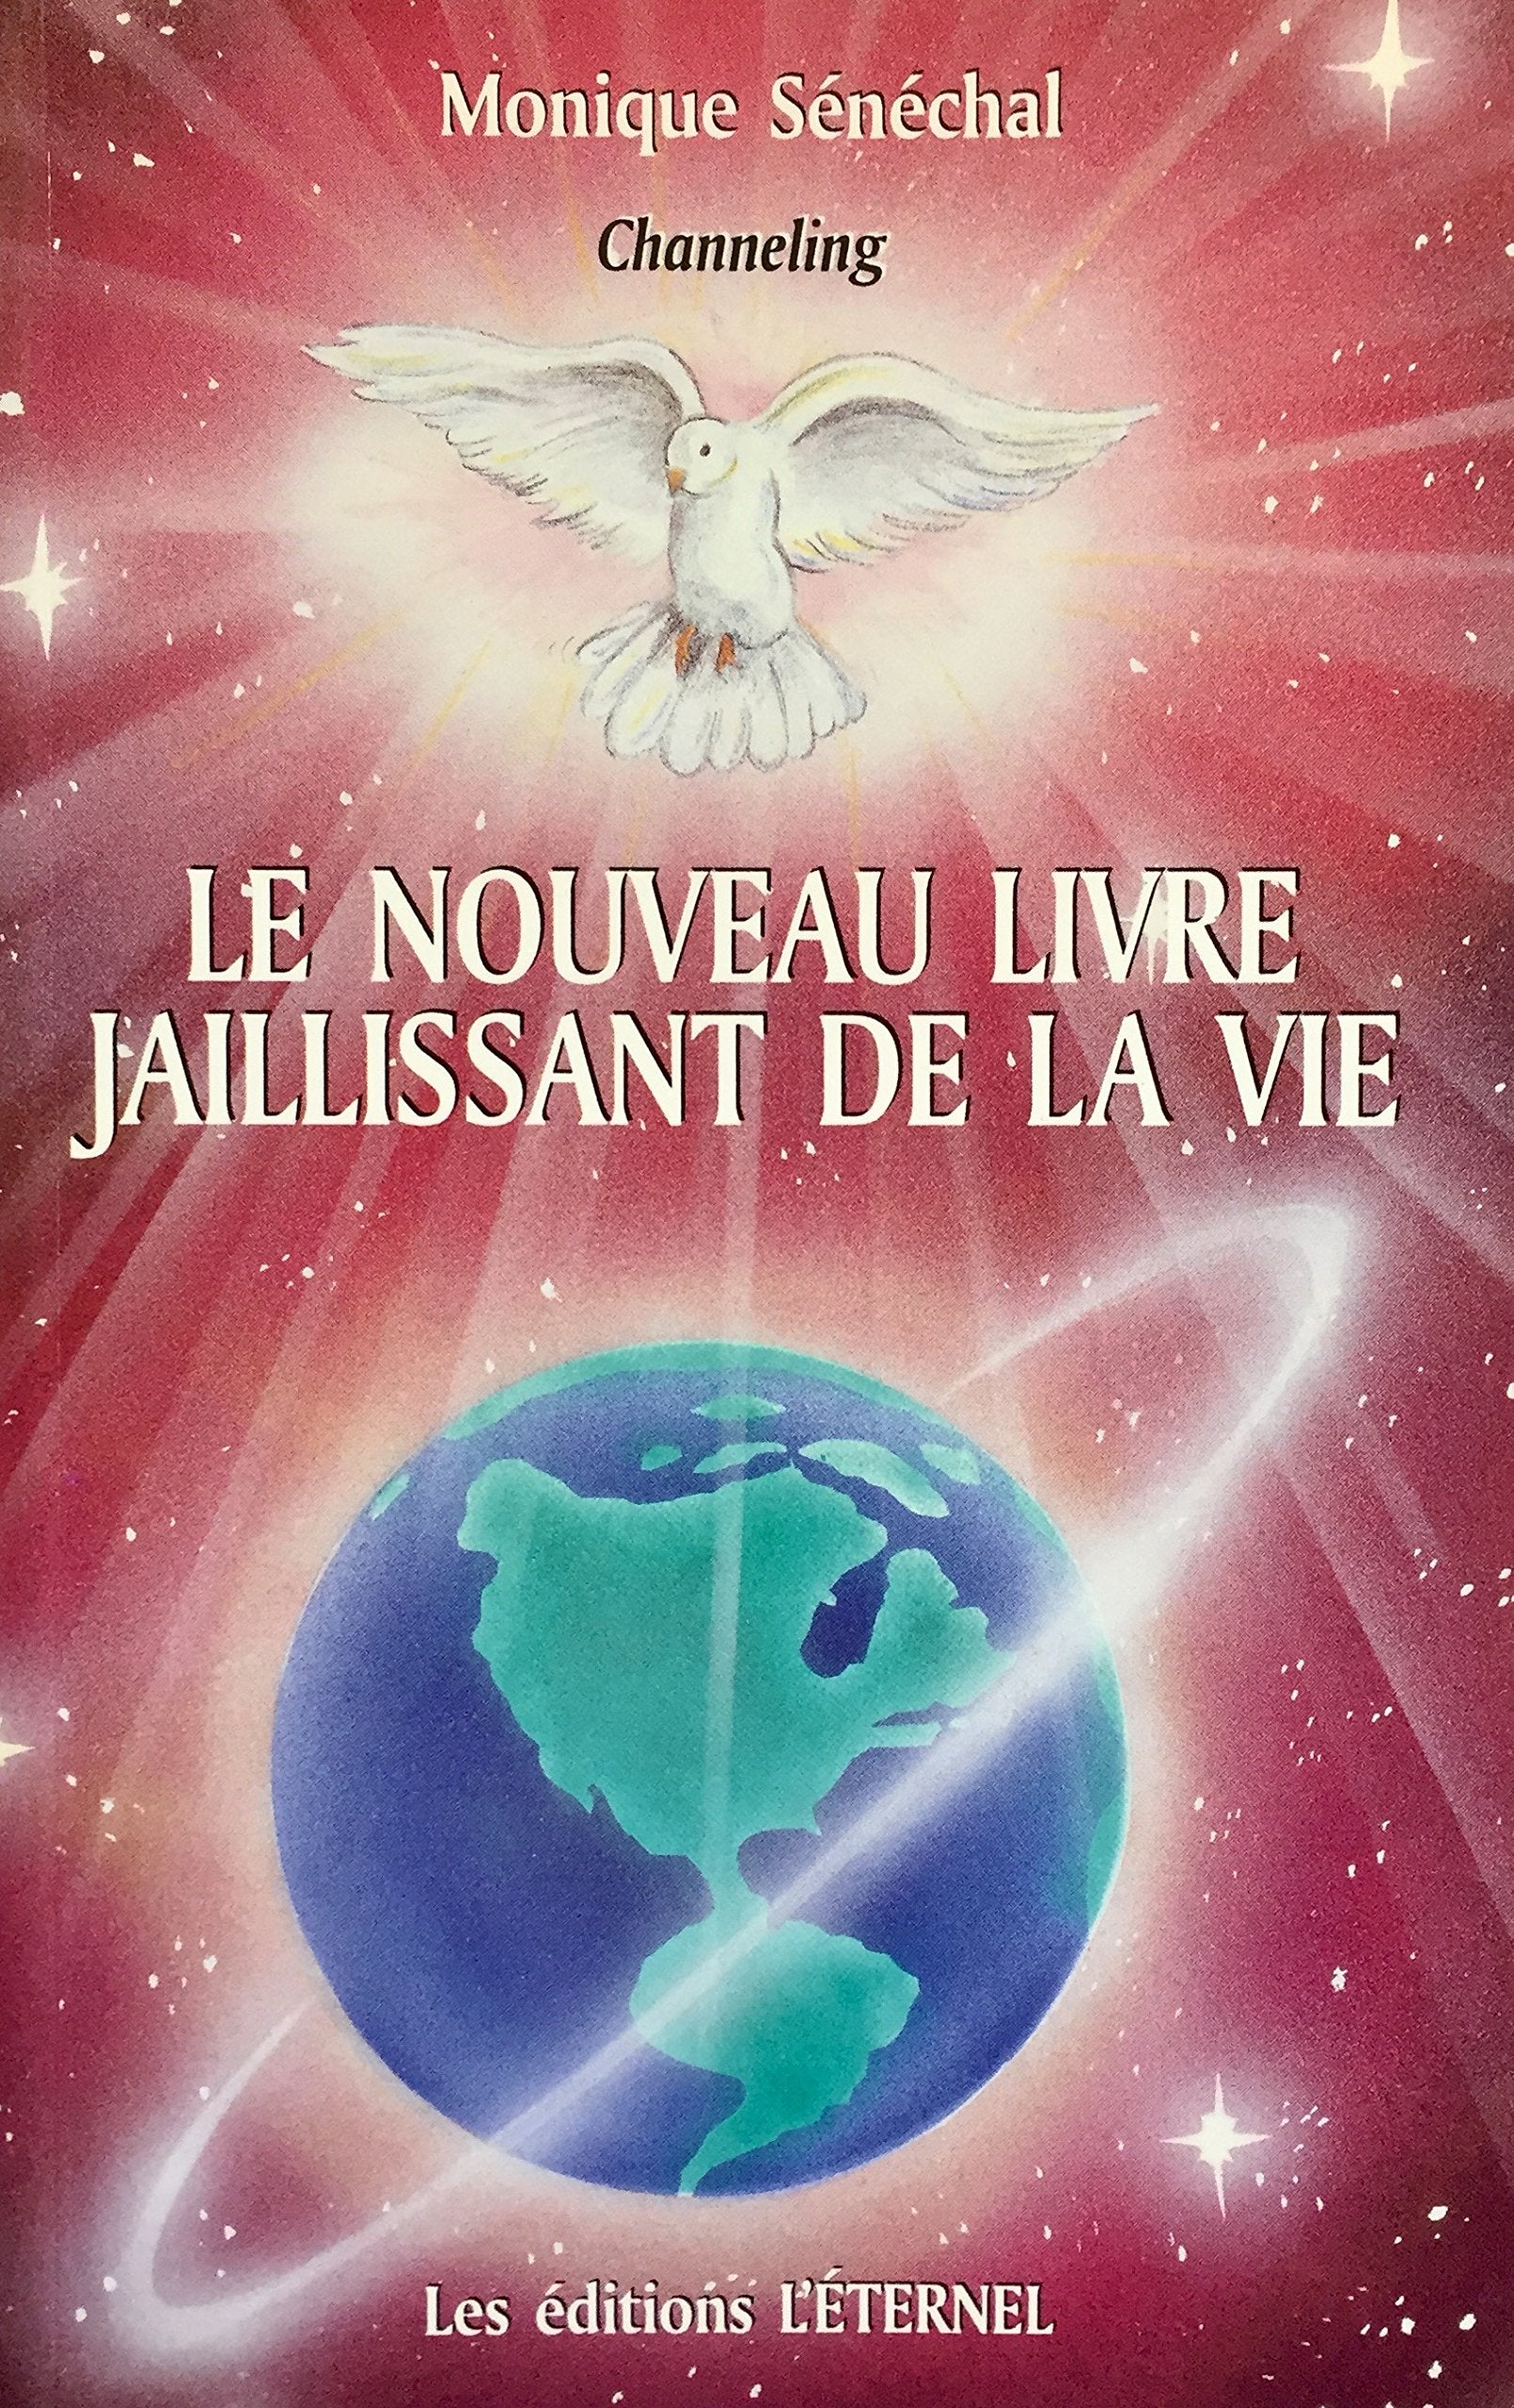 Livre ISBN 2980395013 Le nouveau livre jaillissant de la vie (Monique Sénéchal)